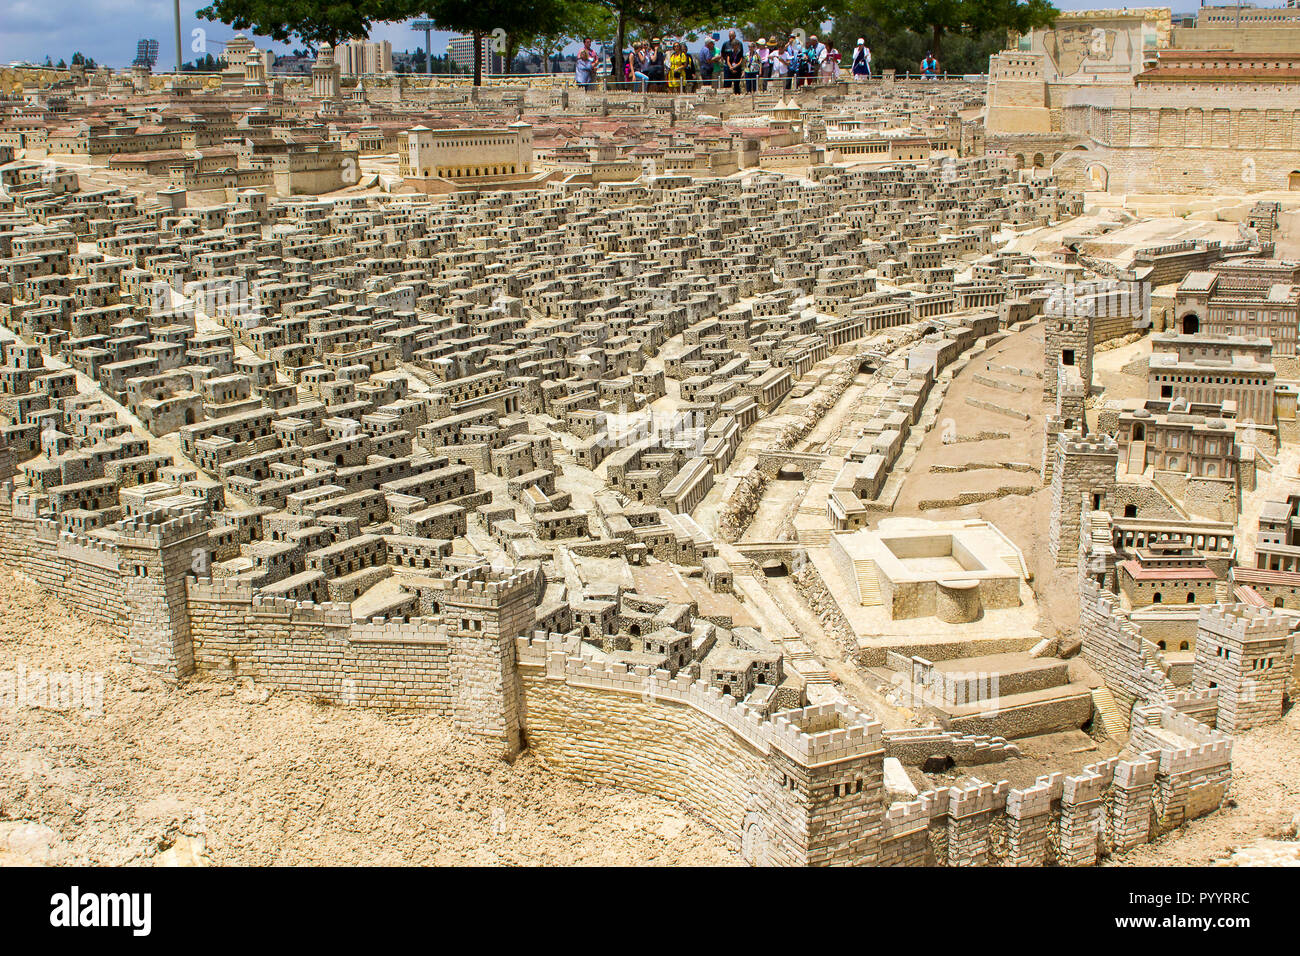 9 maggio 2018 i visitatori a piedi intorno all'aperto modello in scala della città antica di Gerusalemme presso il Museo di Israele in Gerusalemme. Il modello ha molti arbitra Foto Stock